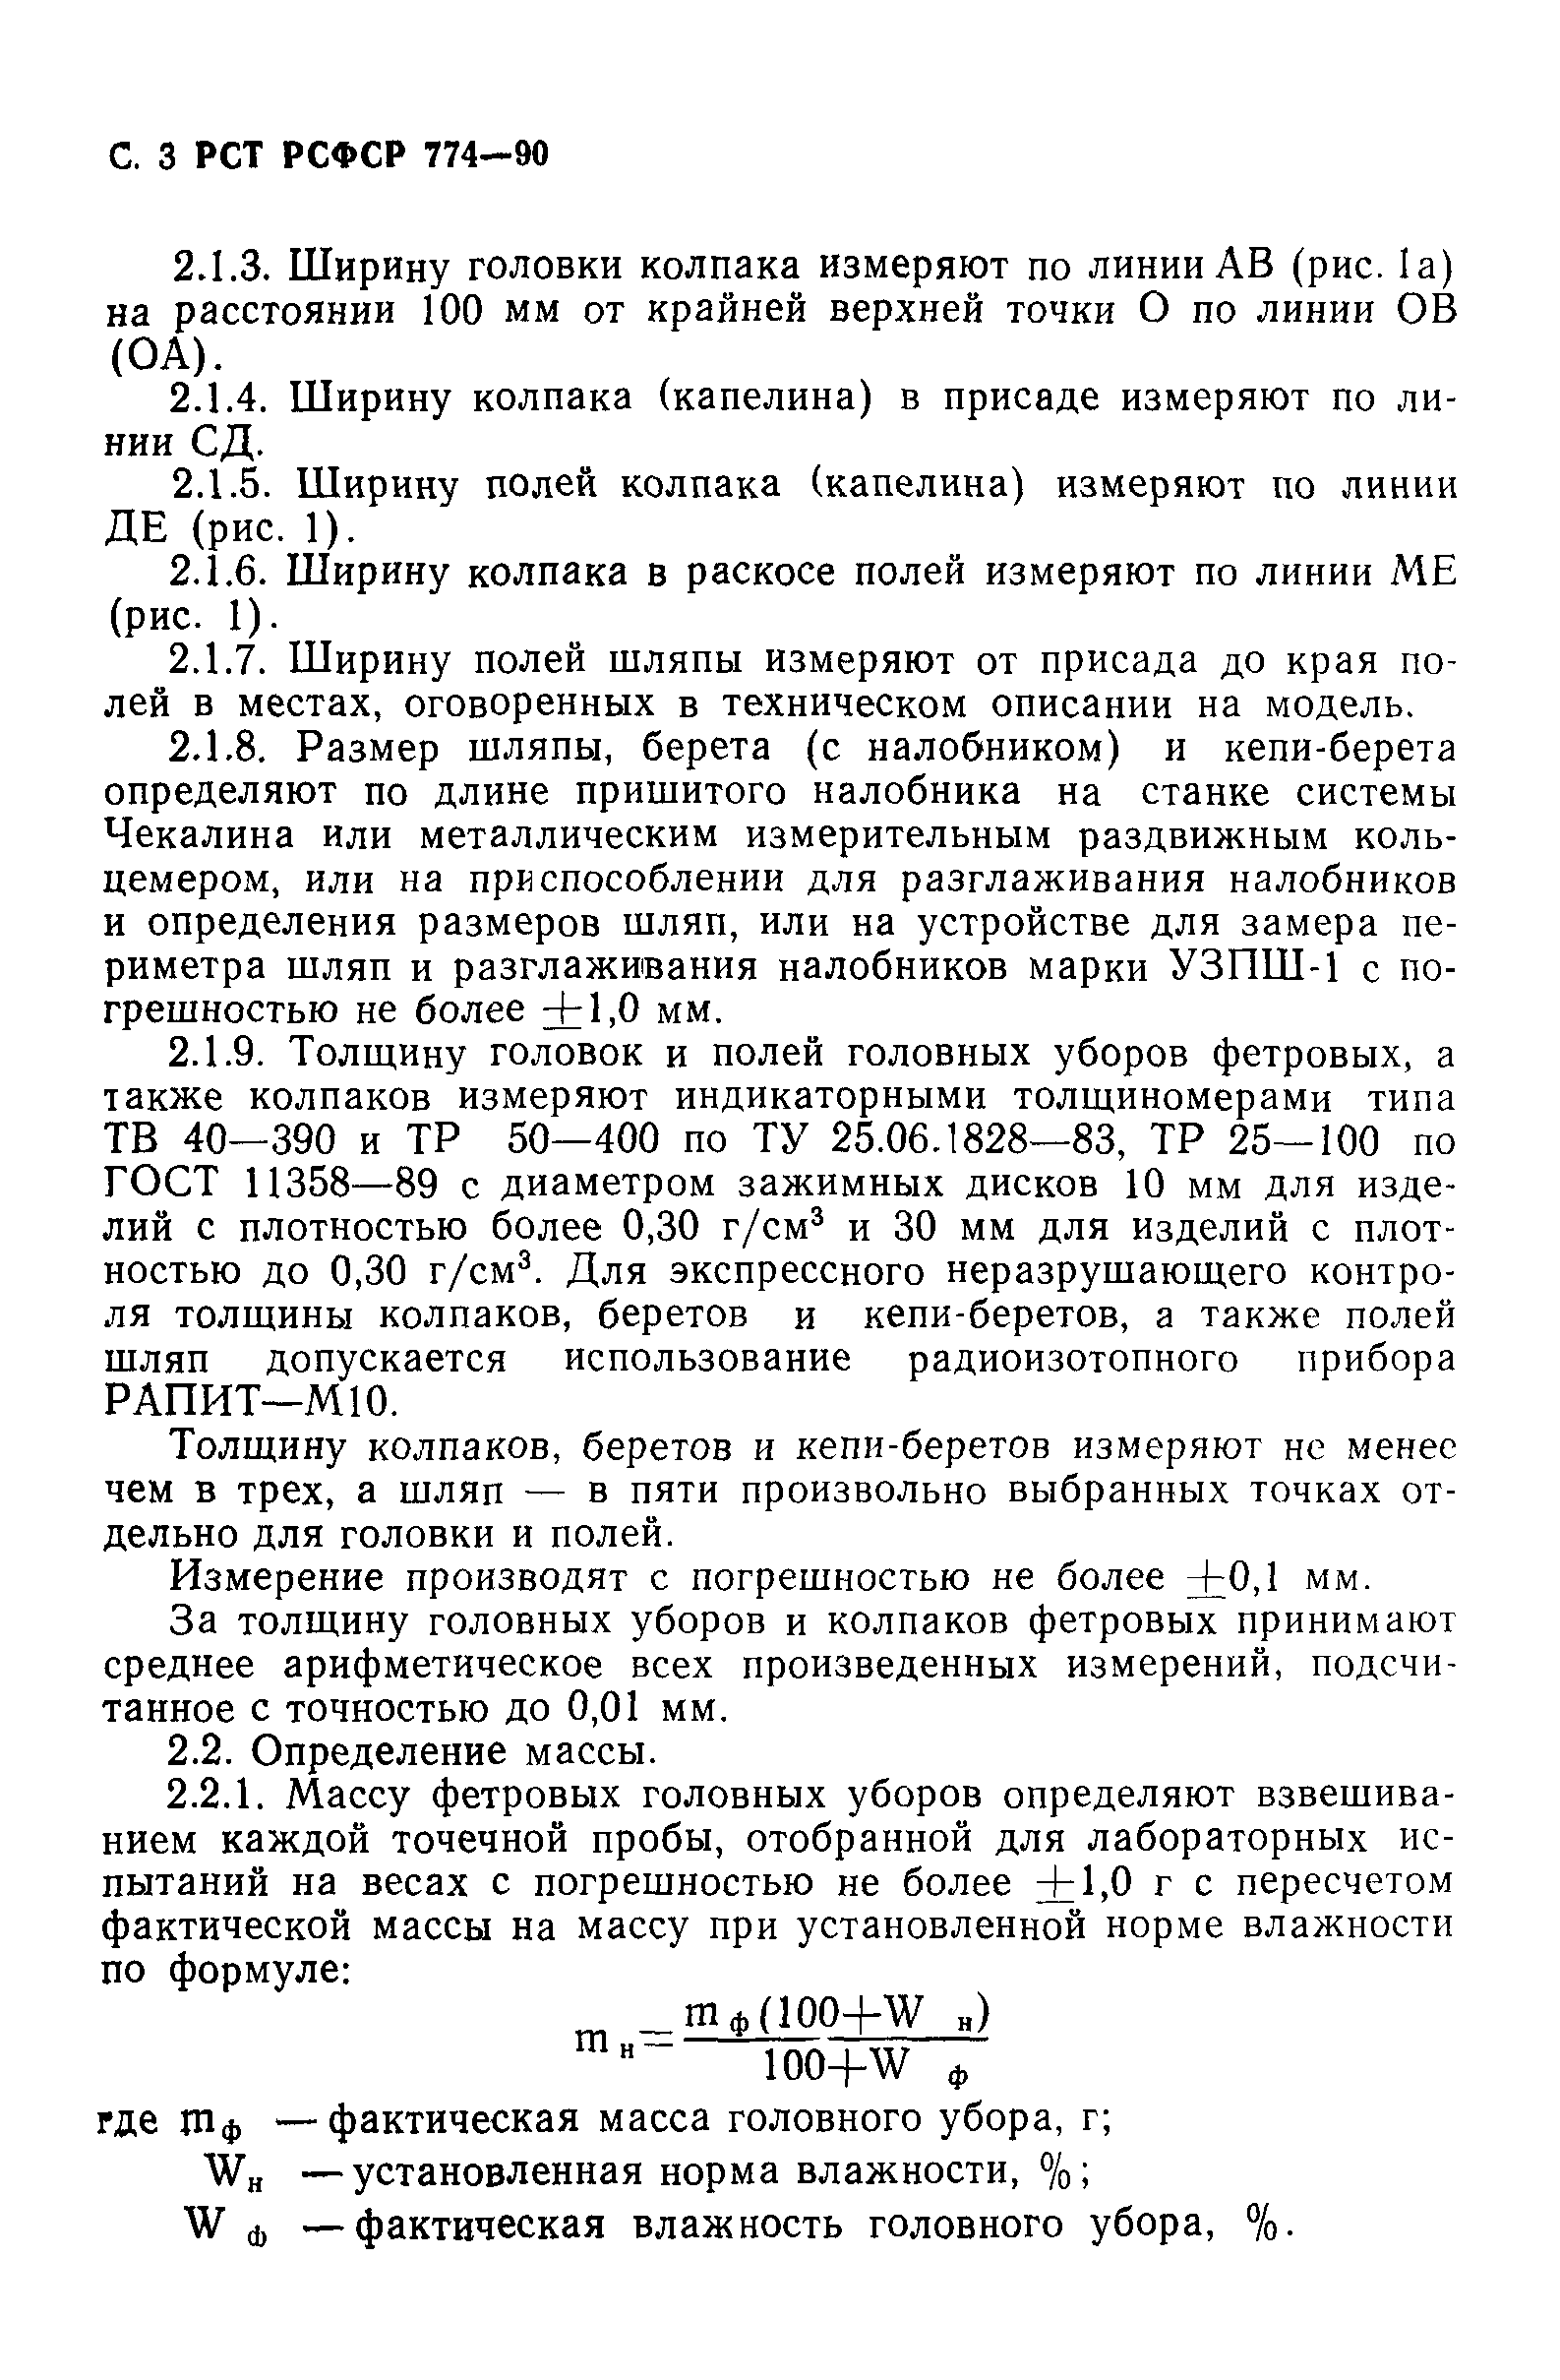 РСТ РСФСР 774-90